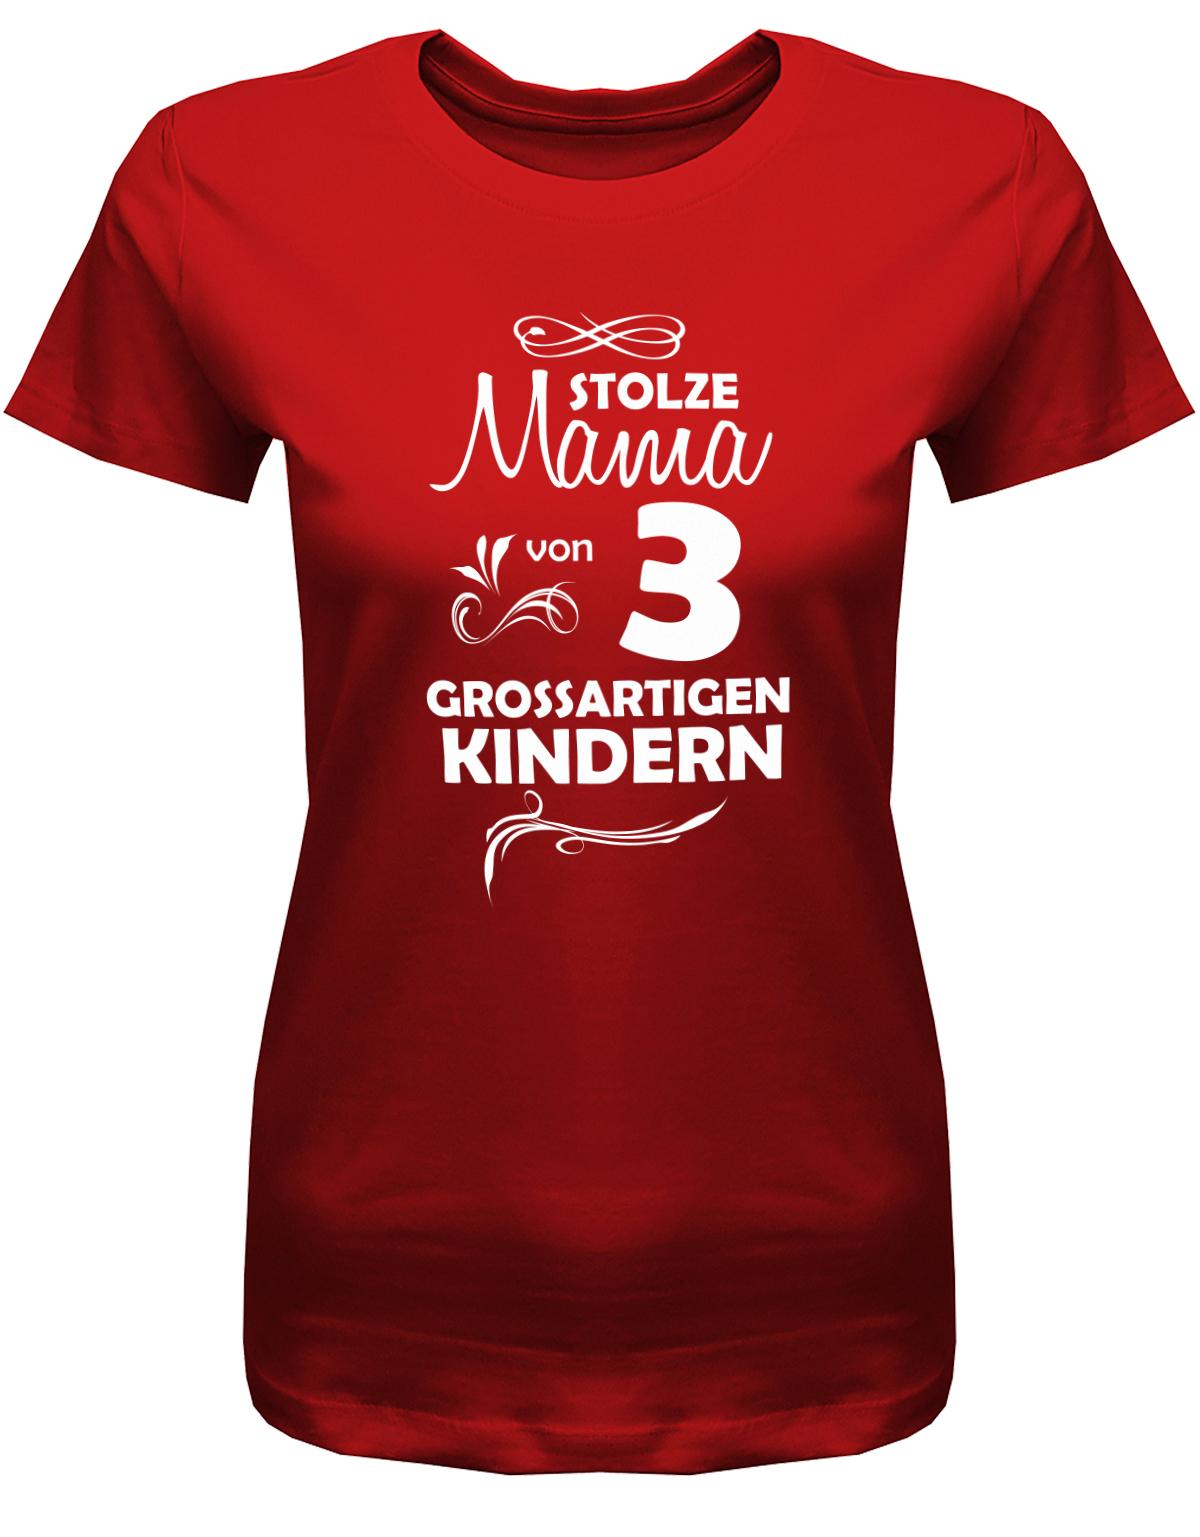 Stolze-Mama-von-3-grossartigen-Kindern-Damen-Shirt-Rot